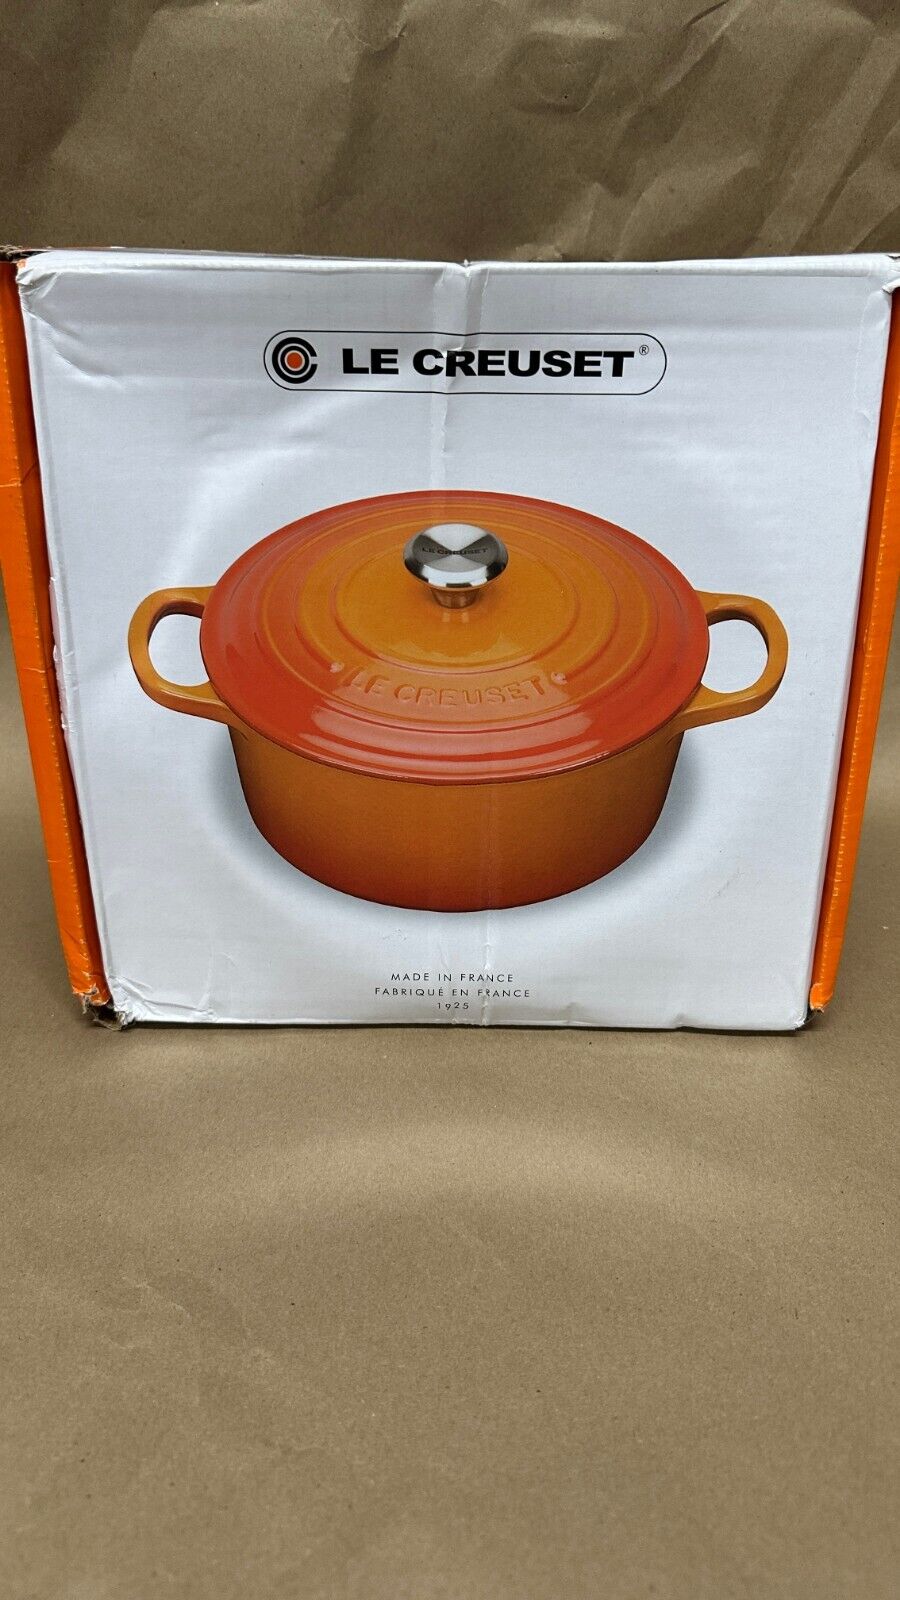 Le Creuset Signature Cast Iron 4.5 Quart Round Dutch Oven, Flame Orange - New